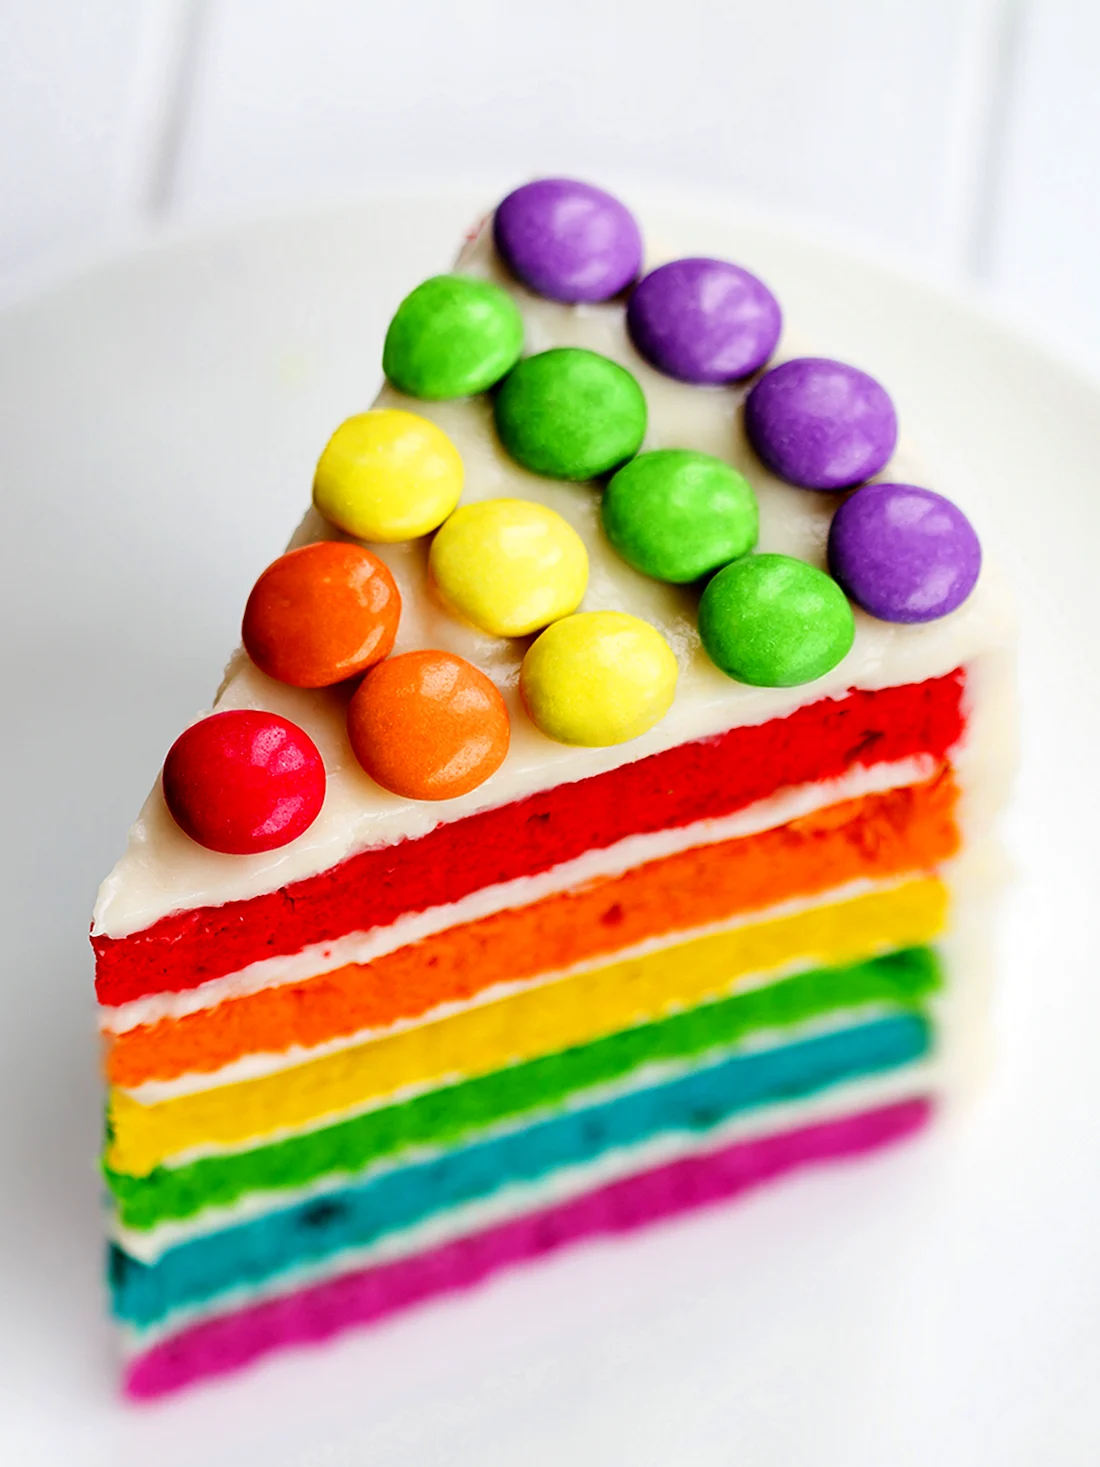 Украшение торта разноцветными драже